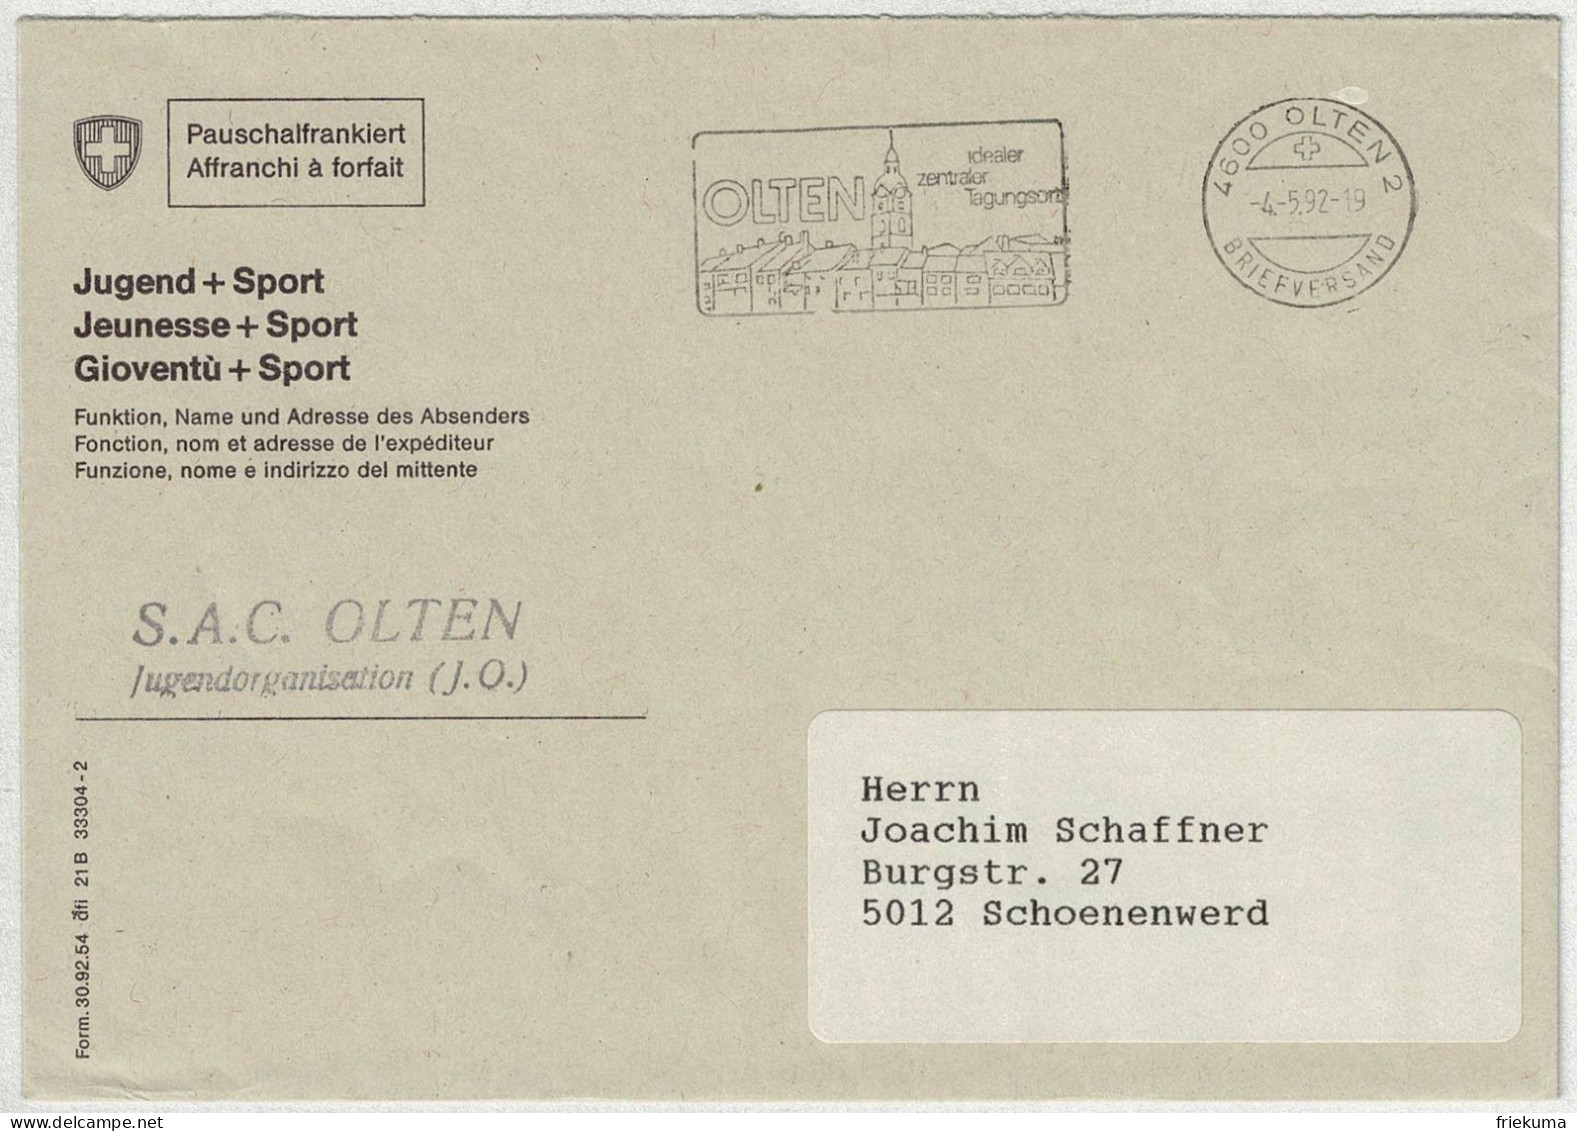 Schweiz 1992, Brief Pauschalfrankiert Olten - Schönenwerd - Marcophilie